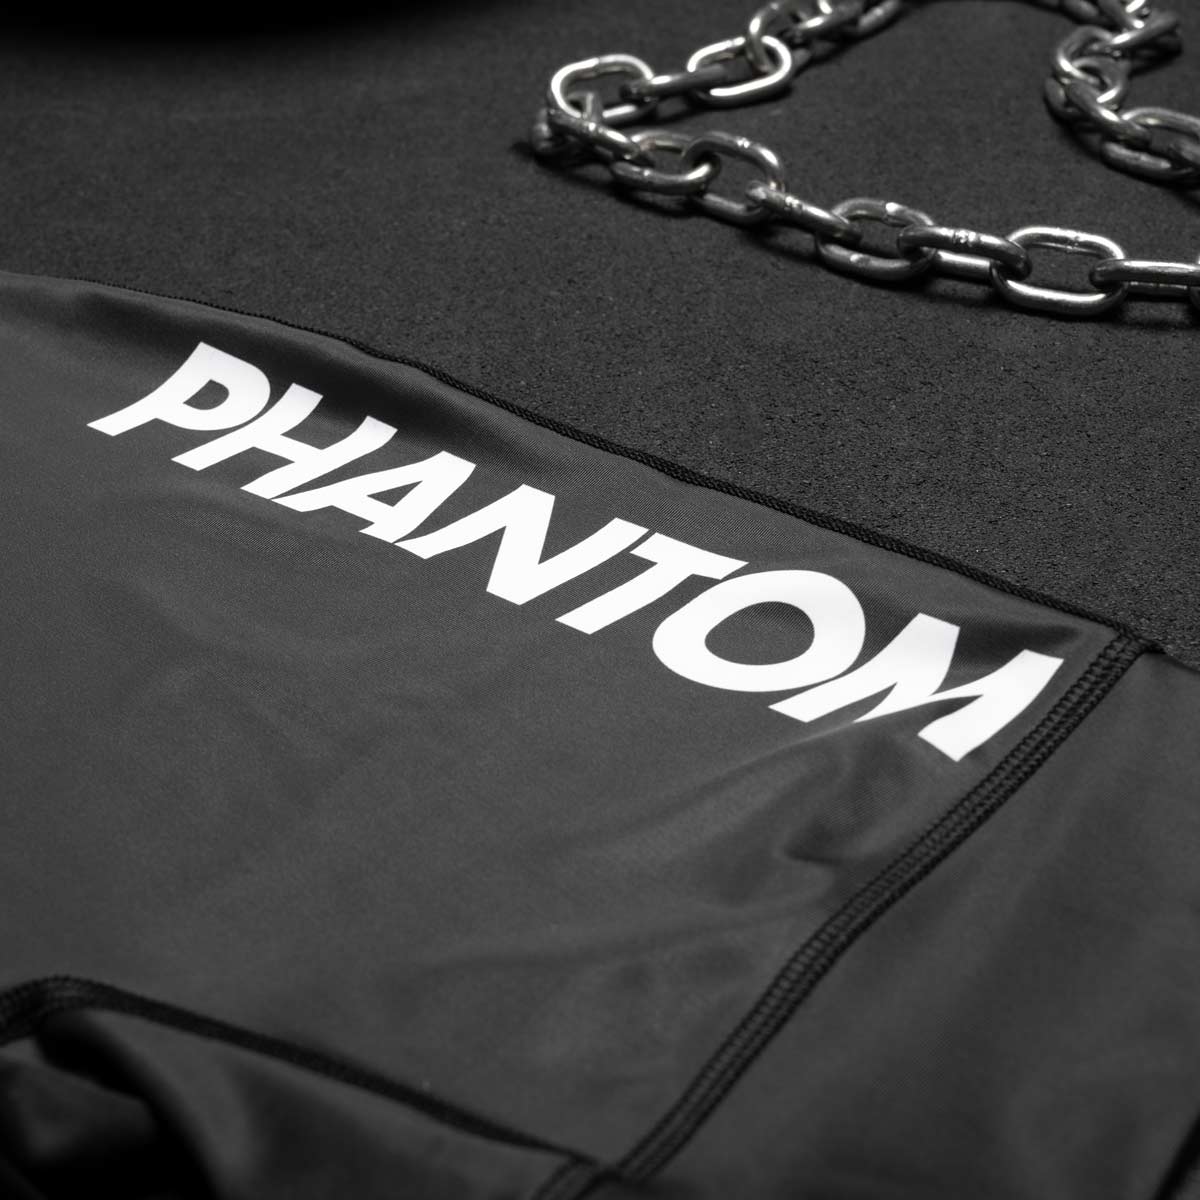 Phantom Ringertrikot Apex in der Farbe Schwarz. Ideal für dein Ringer Training. In hervorragender Passform und Haltbarkeit. Sublimations Druck sorft für einen dezenten Style. 